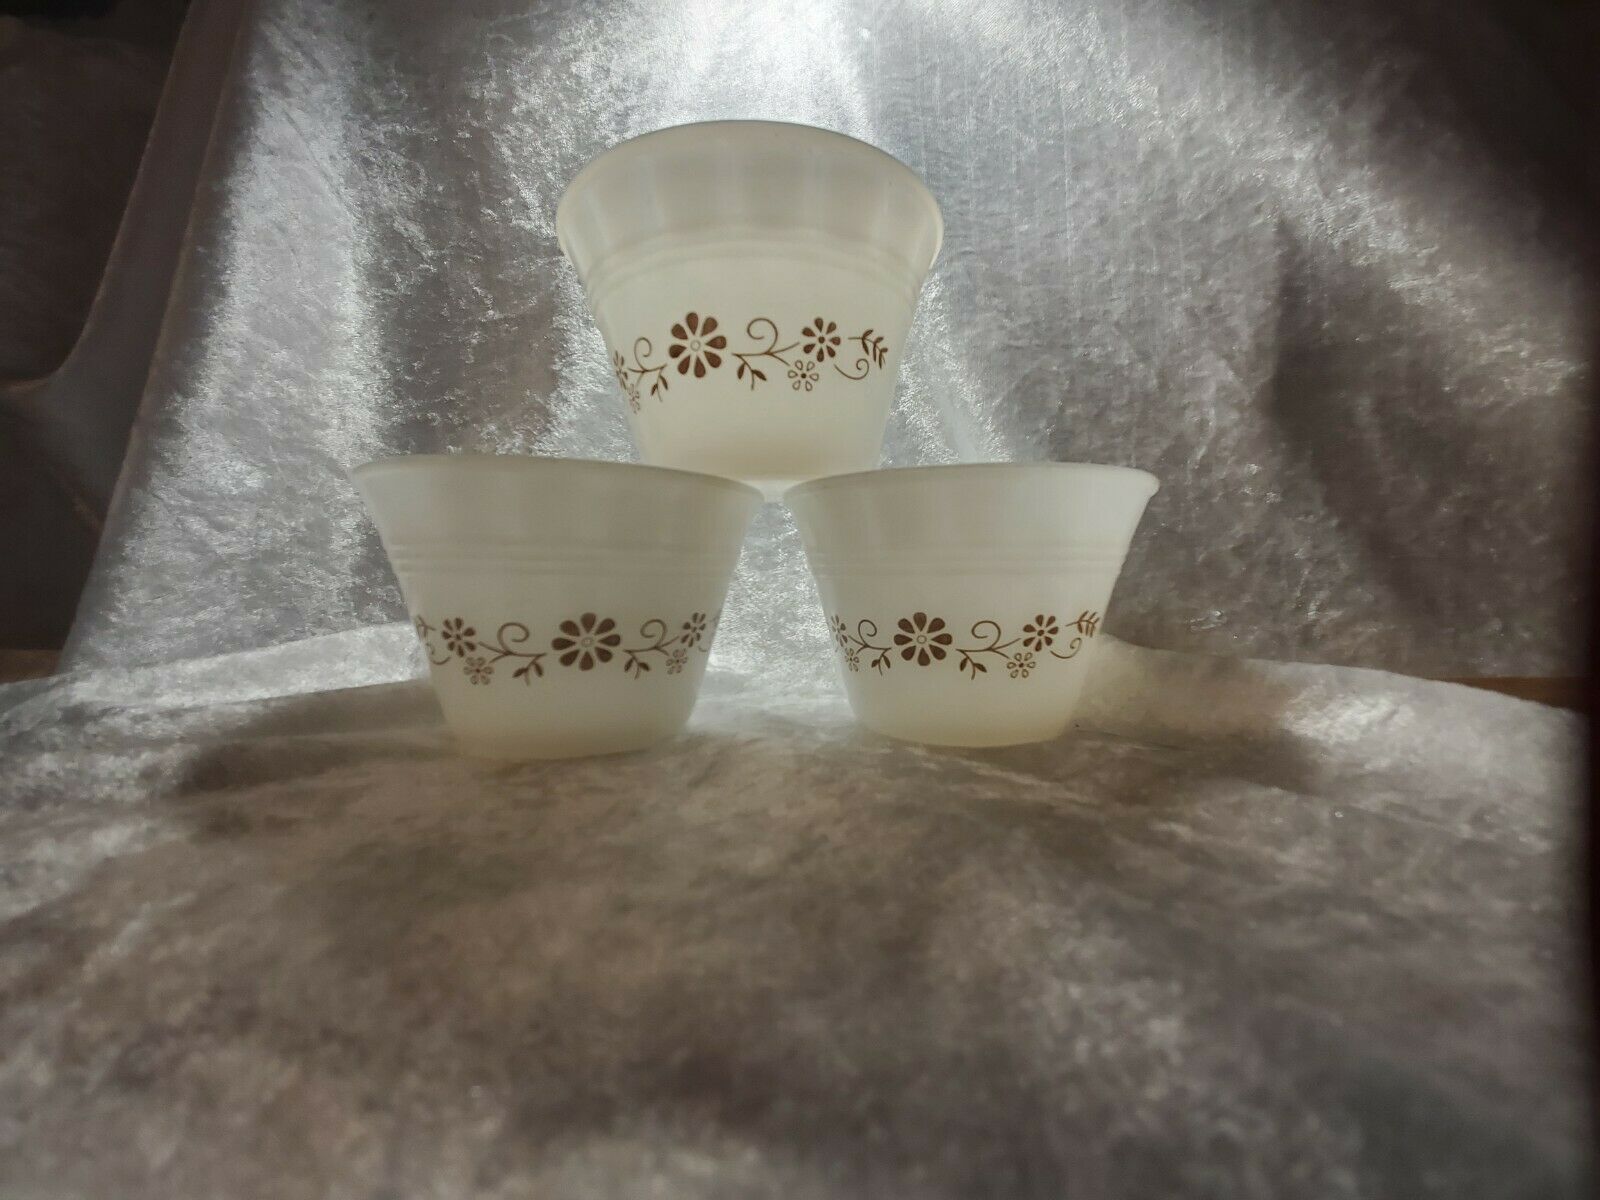 3 Vintage Milk Glass Custard Cup Dynaware Pyr-o-rey Brown Daisy Flower 3 1/2